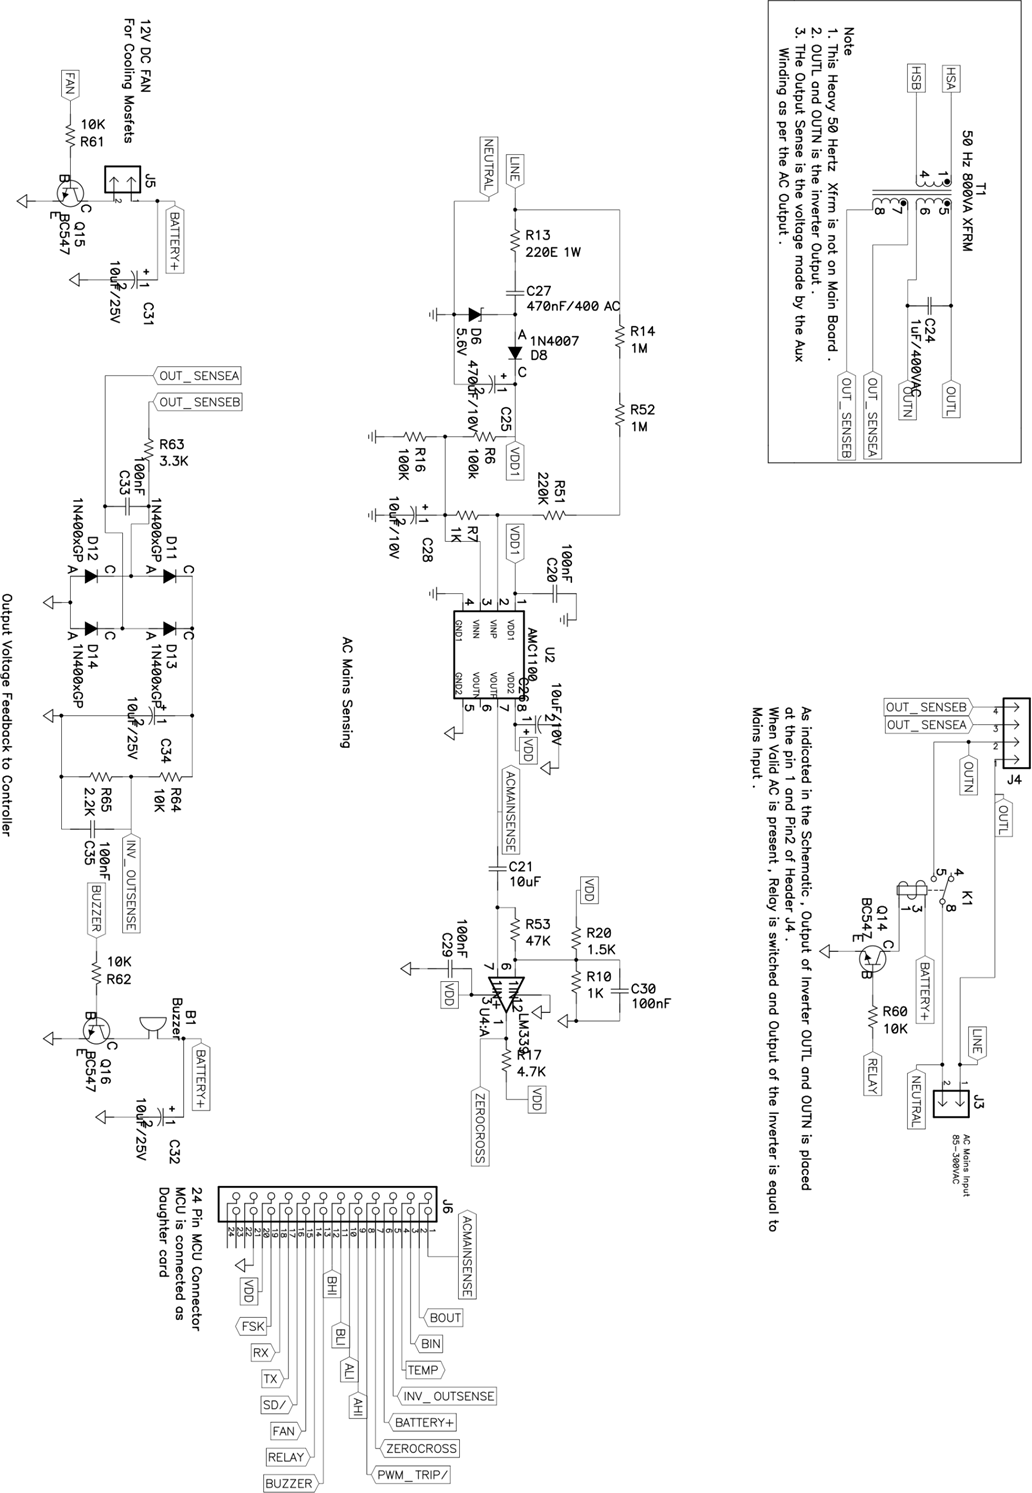 mainboard-schematic-02-slaa602.png